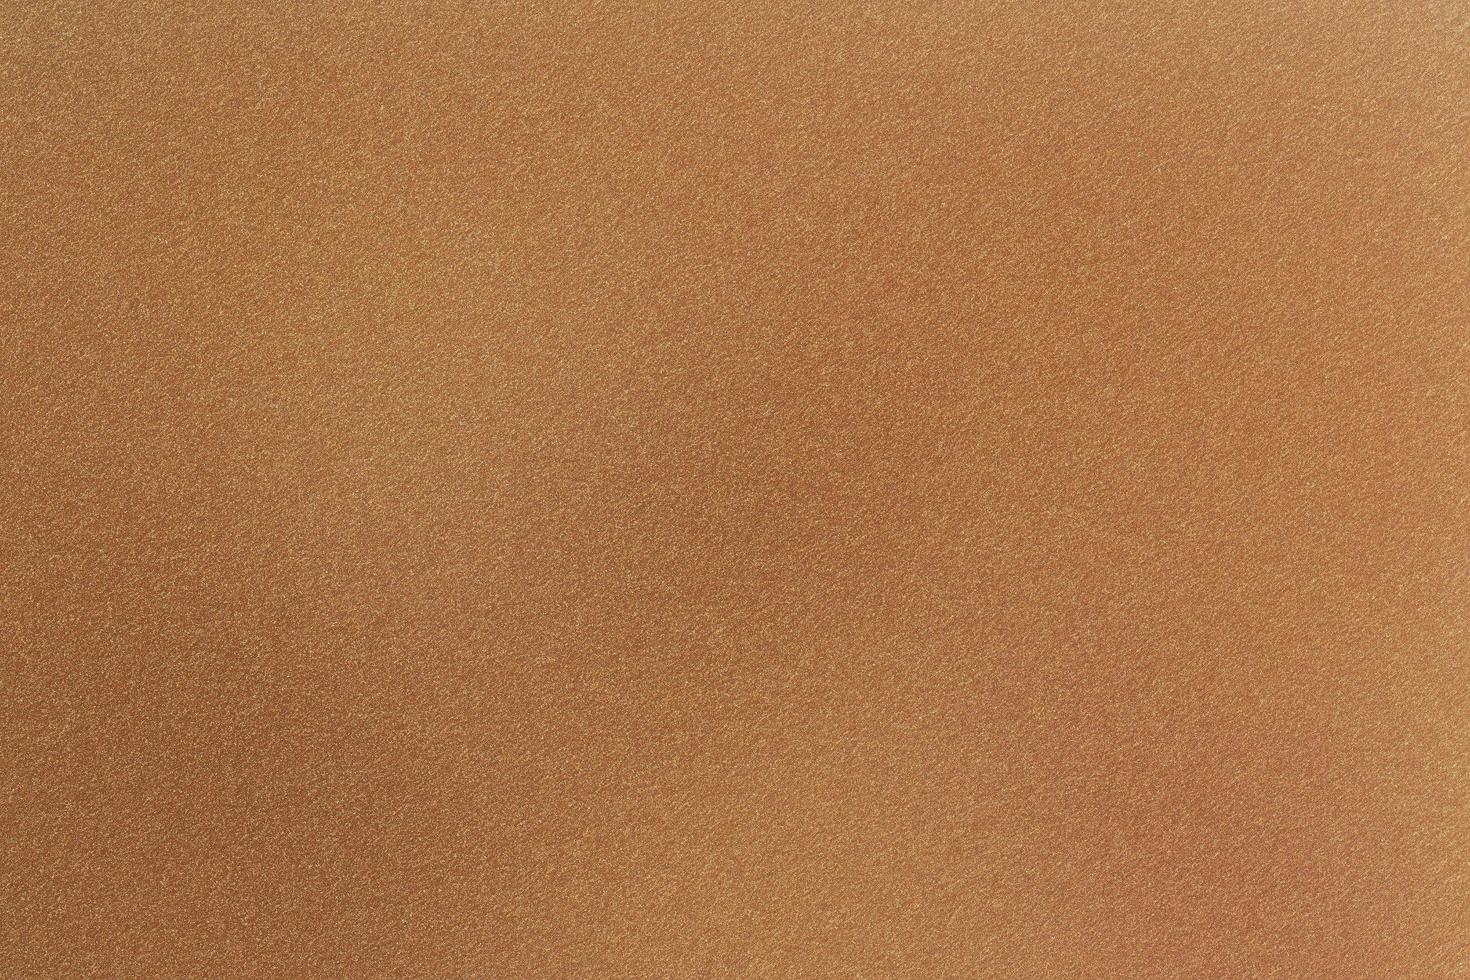 textur der braunen papierschachtel, abstrakter hintergrund foto